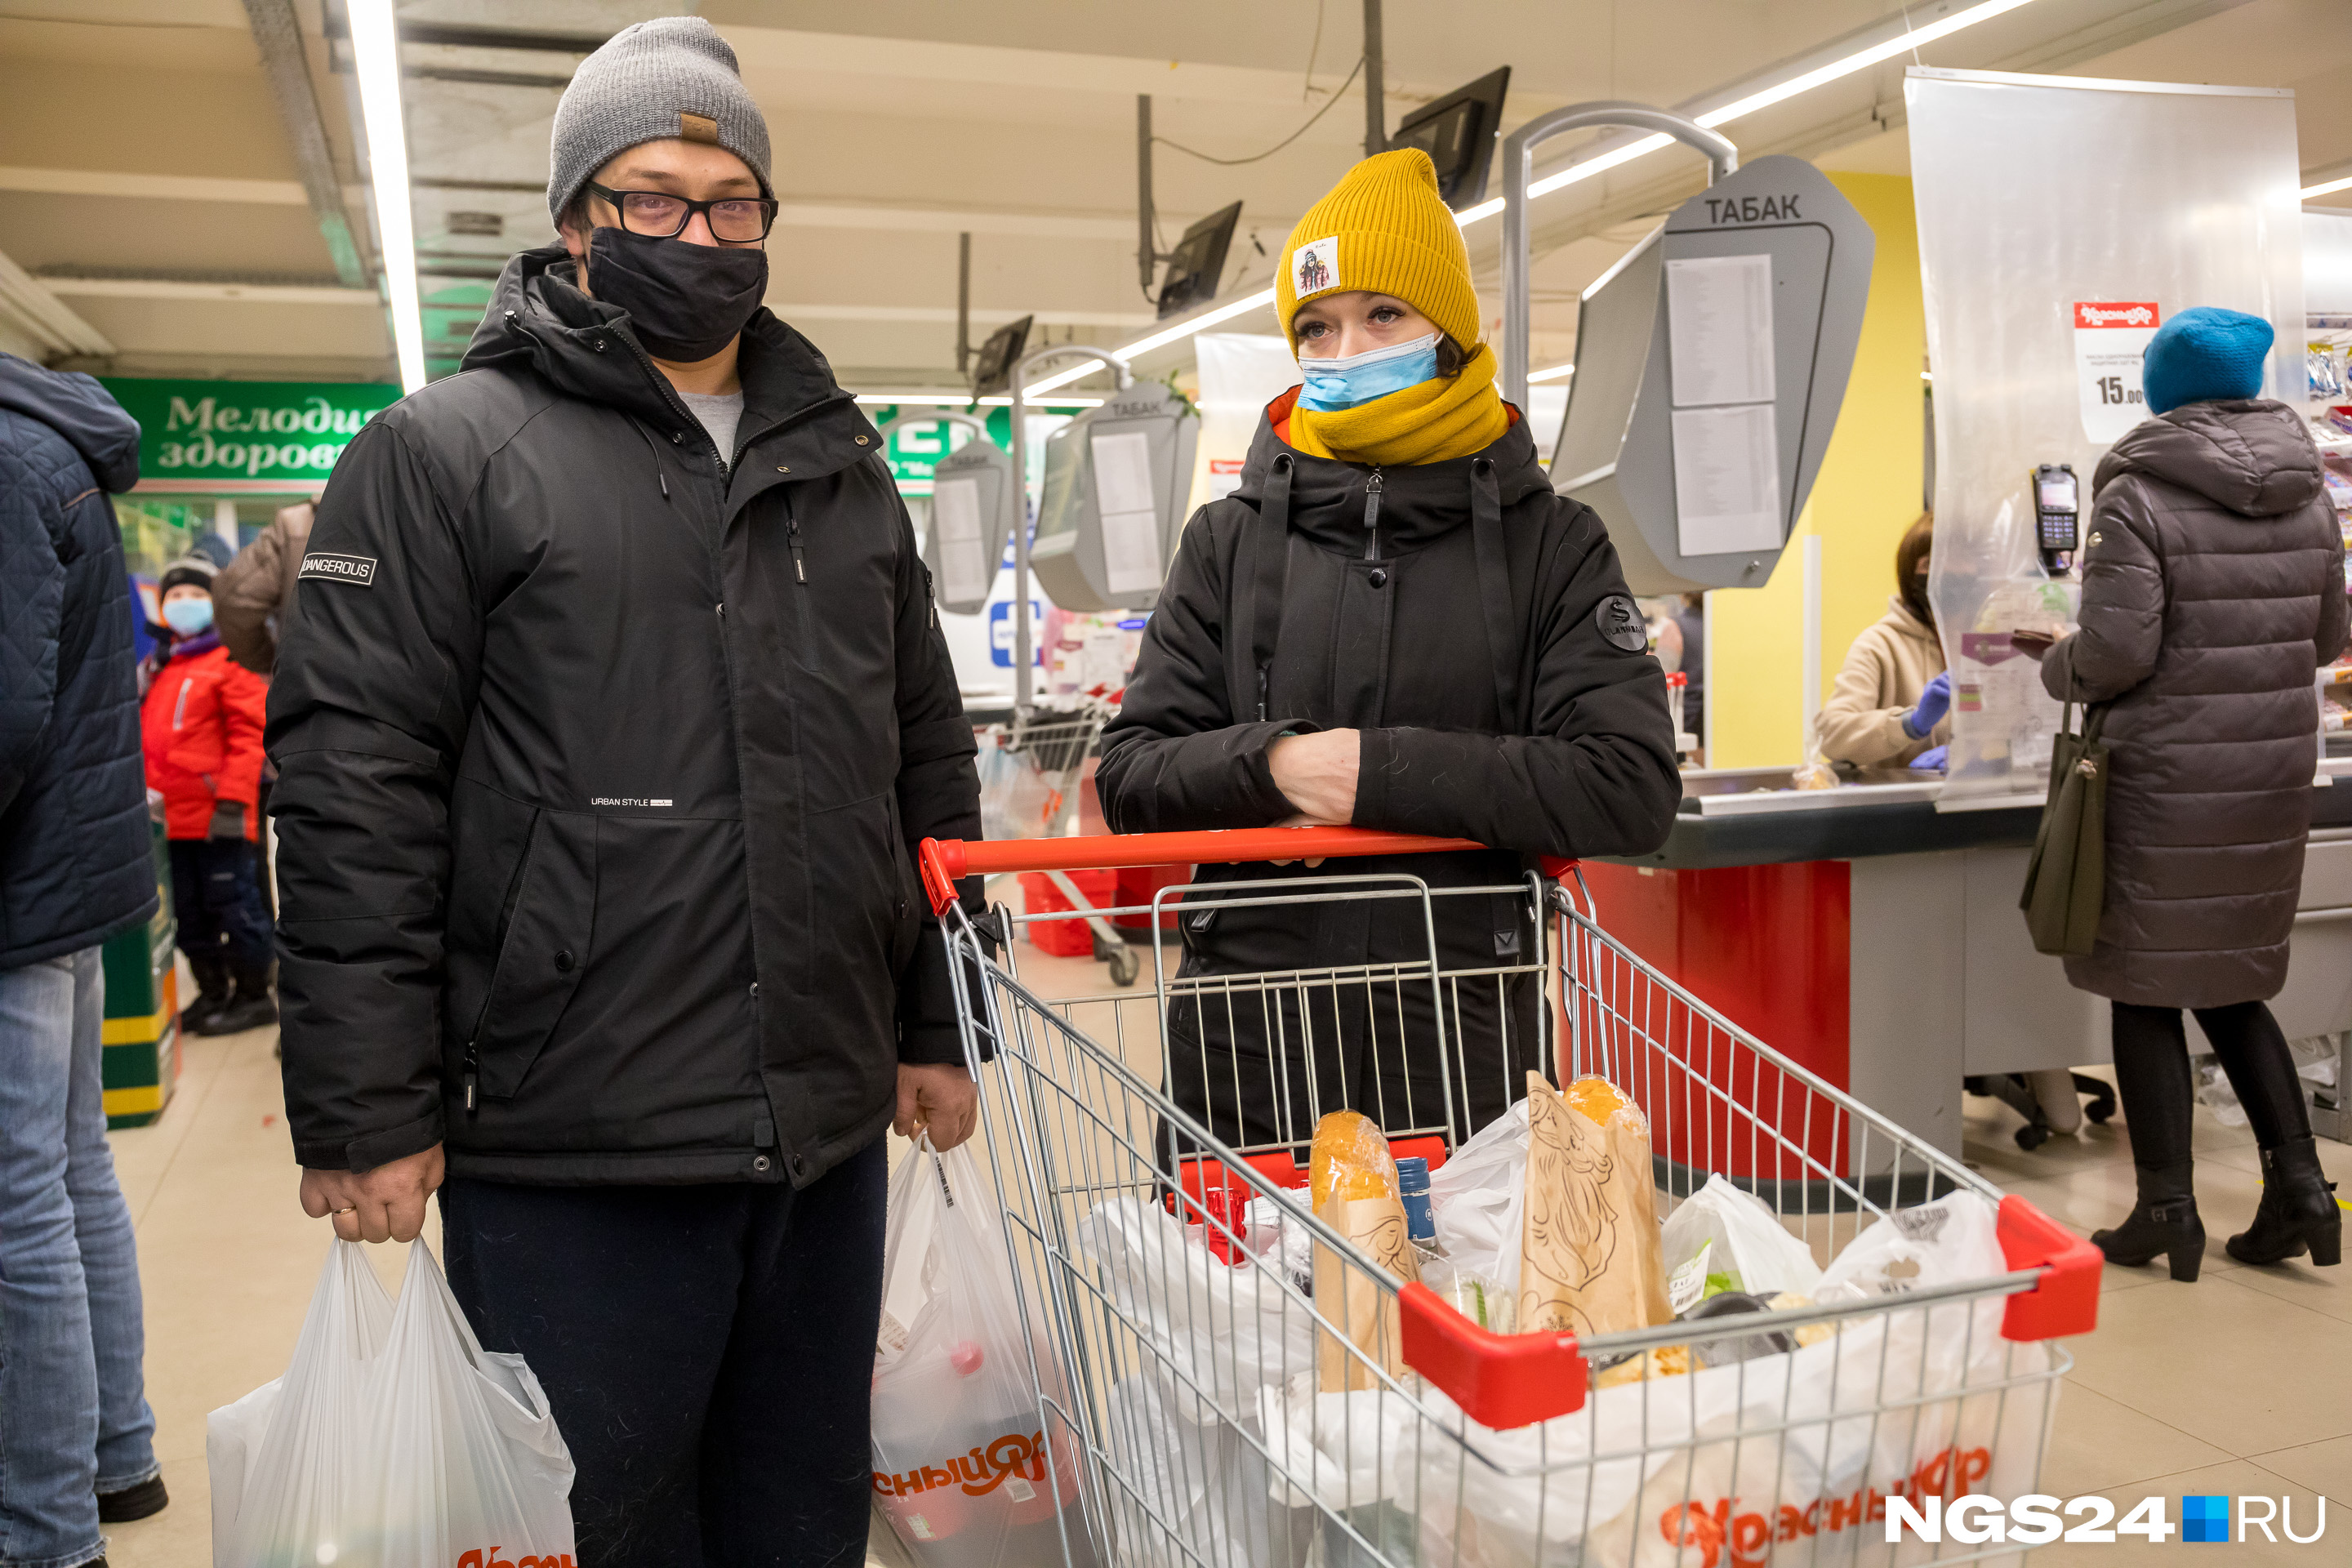 Один поход в супермаркет паре обошелся в девять тысяч рублей, и он «не первый и не последний» перед праздником, признаются парень с девушкой